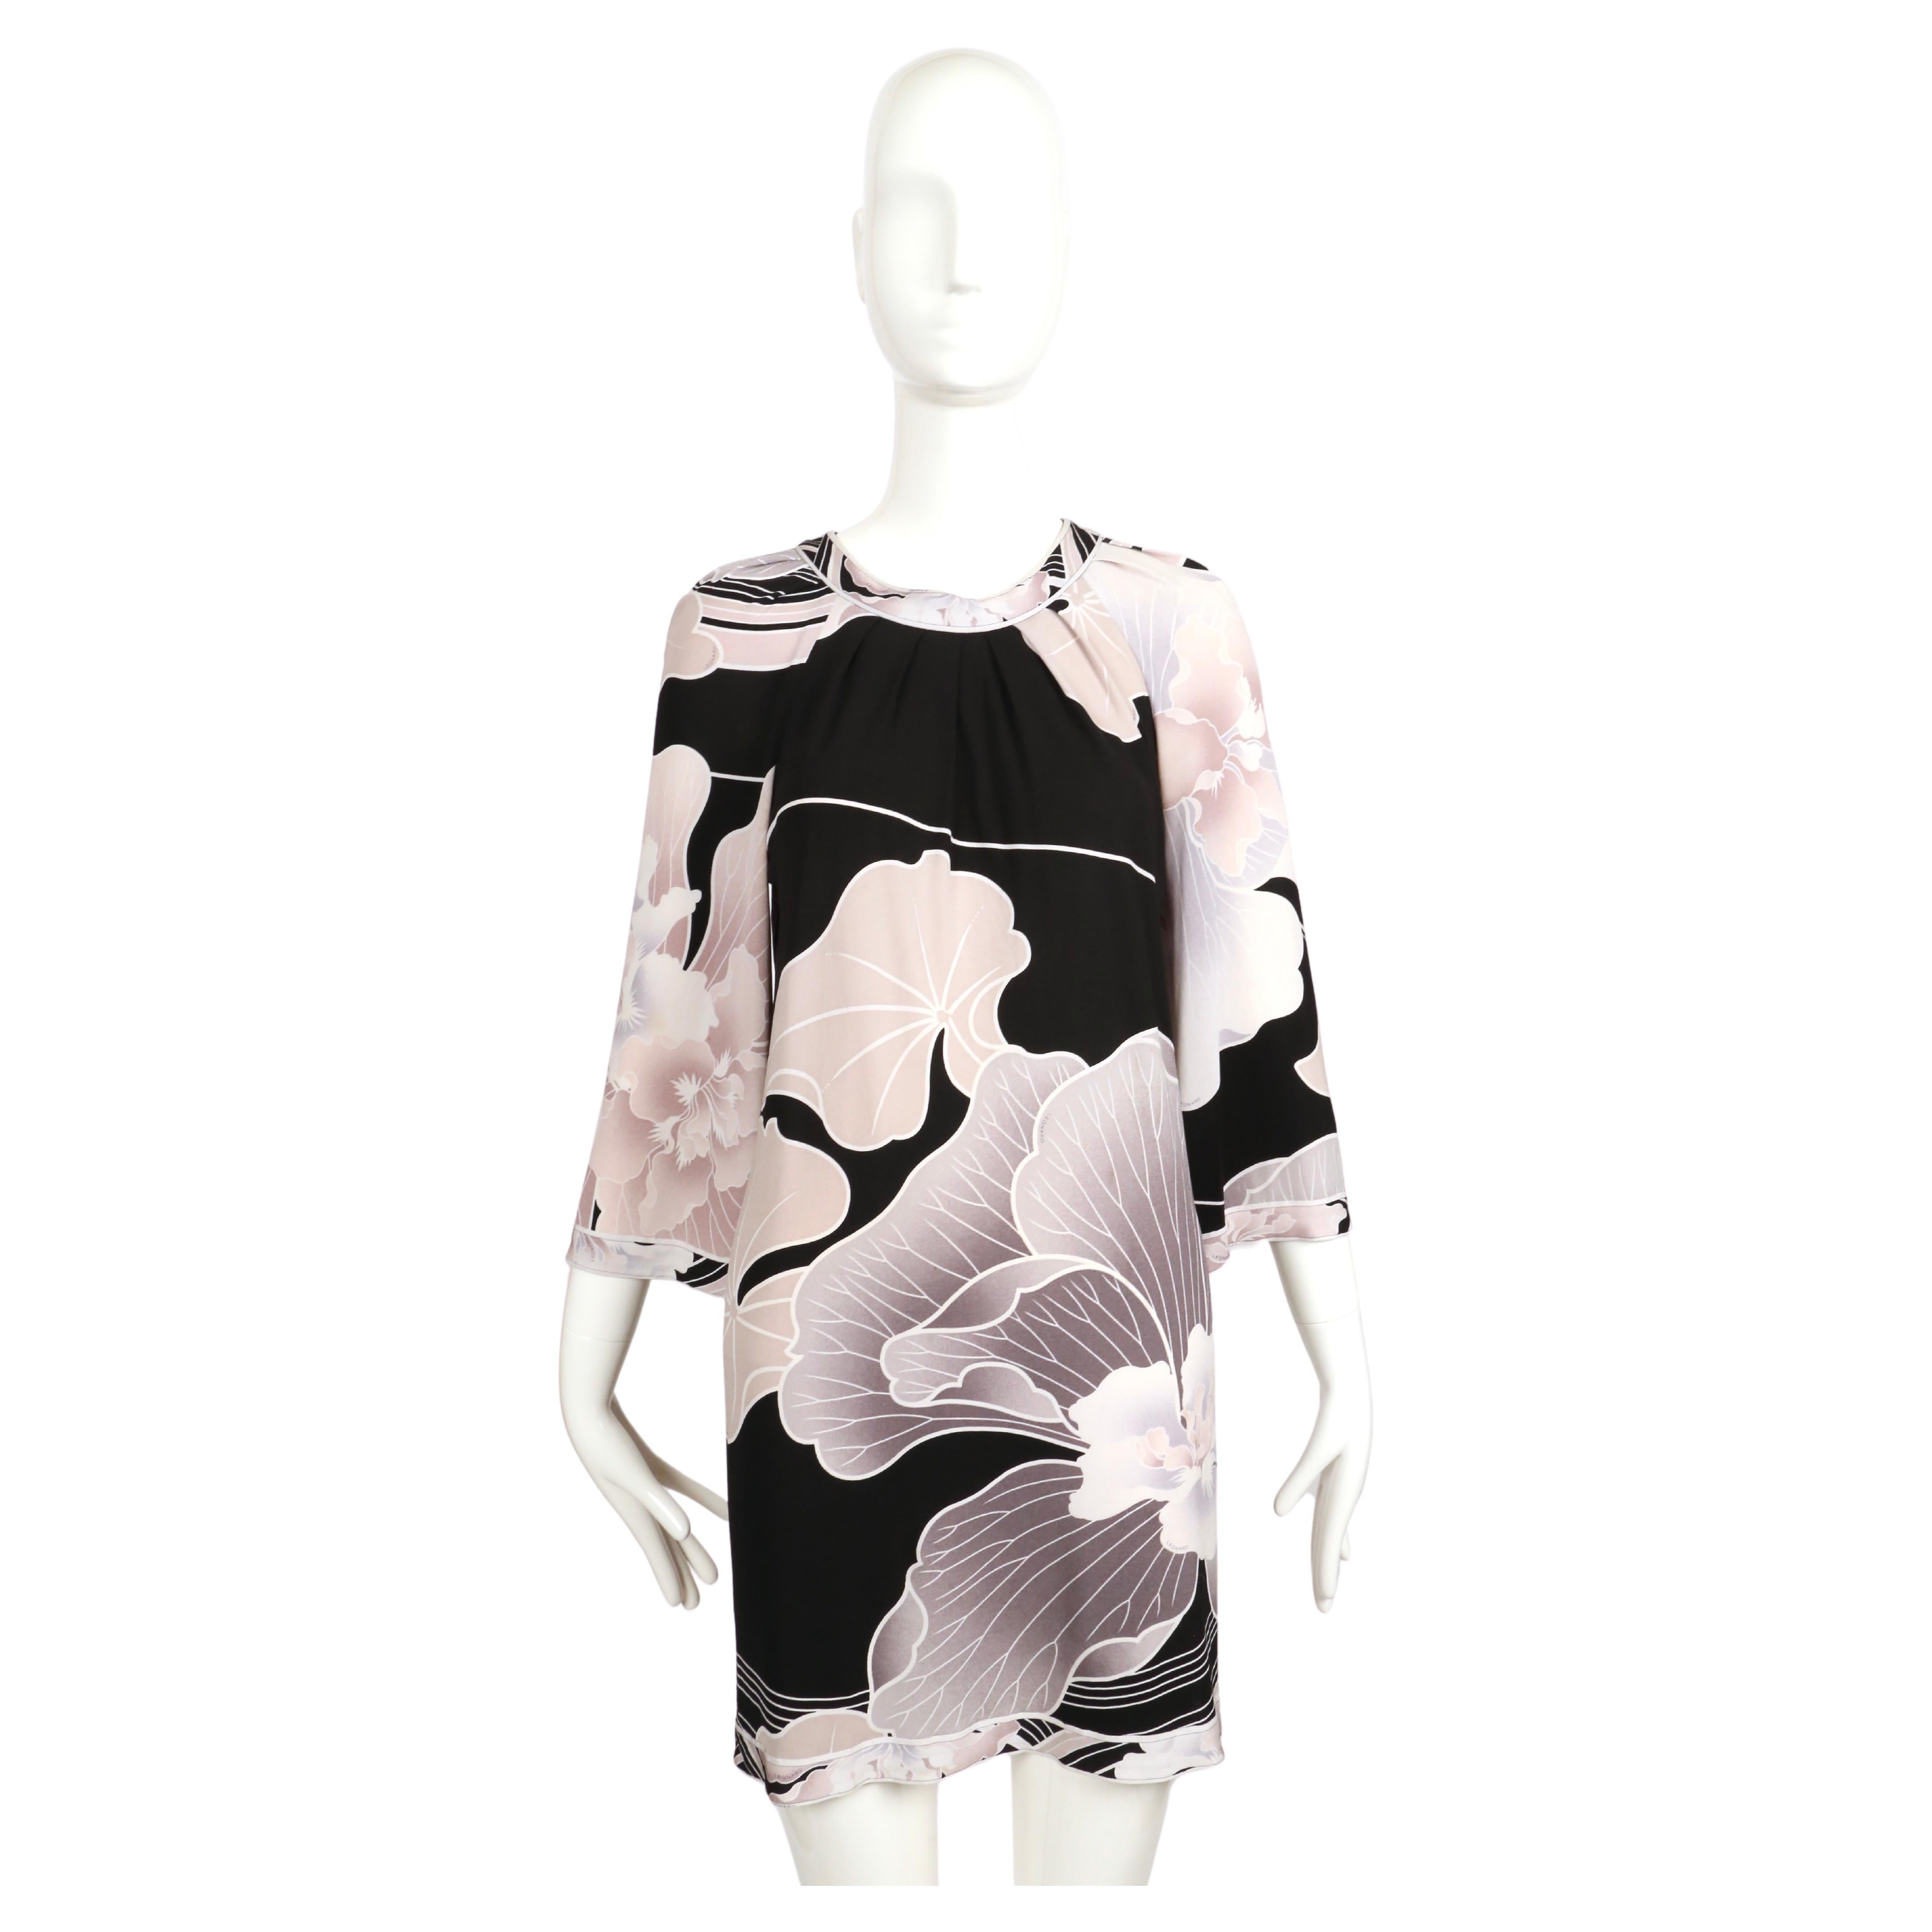 Babydoll-Kleid aus Seidenjersey mit Blumendruck in Grau- und Schwarztönen, entworfen von Leonard of Paris in den 1990er Jahren. Es ist keine Größe angegeben, aber es würde am besten zu einer Größe S bis M passen. Ungefähre Maße: Brustumfang 40